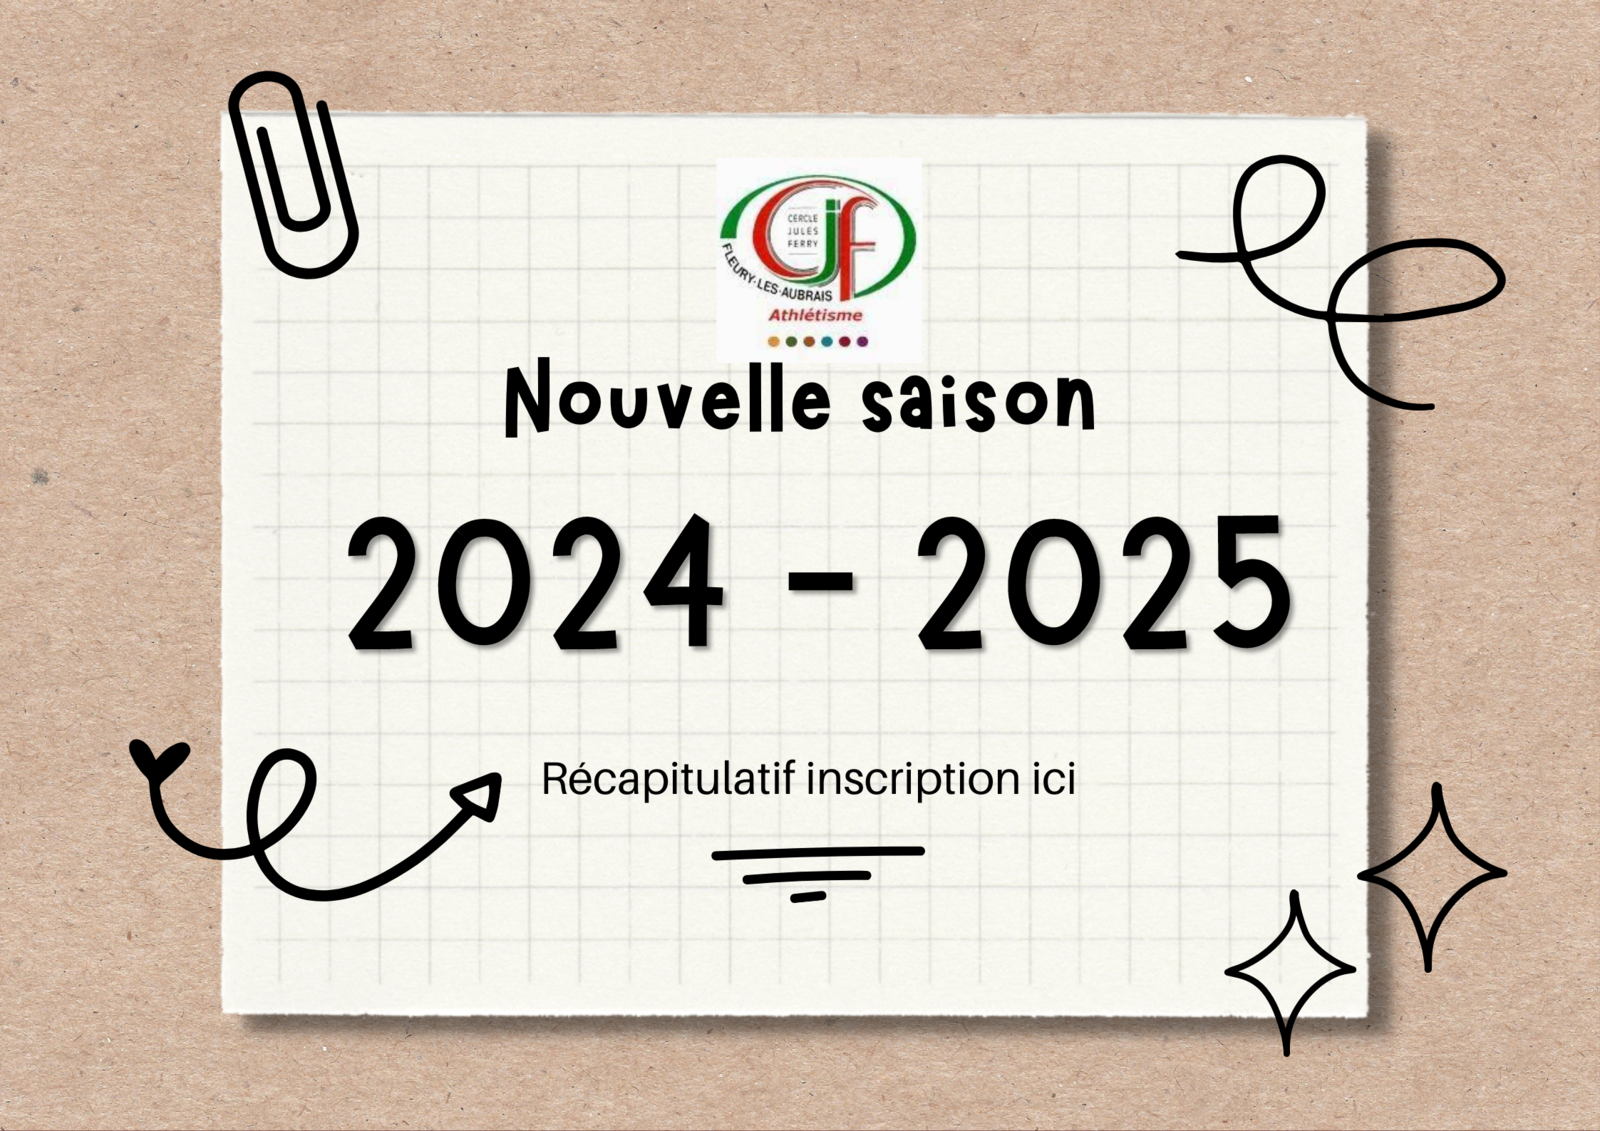 Aide et récapitulatif pour inscription saison 2024 - 2025